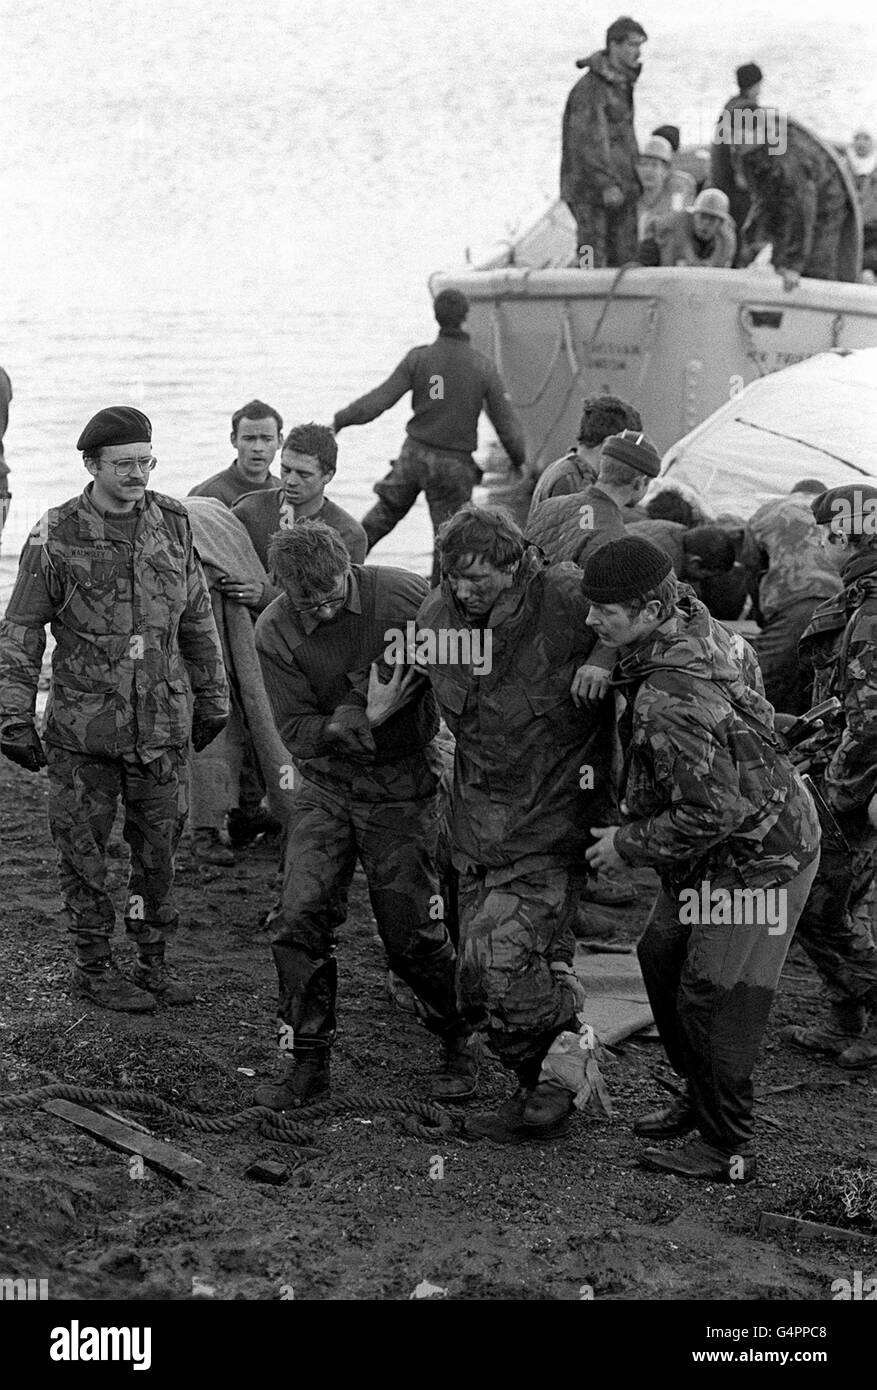 DER FALKLAND-KRIEG: Hilfe für einen verletzten Gefährten als Überlebende in Bluff Cove, East Falkland, an Land kommen, nachdem zwei britische Landungsschiffe, Sir Galahad und Sir Tristram, während des Falkland-Konflikts angegriffen wurden. Stockfoto